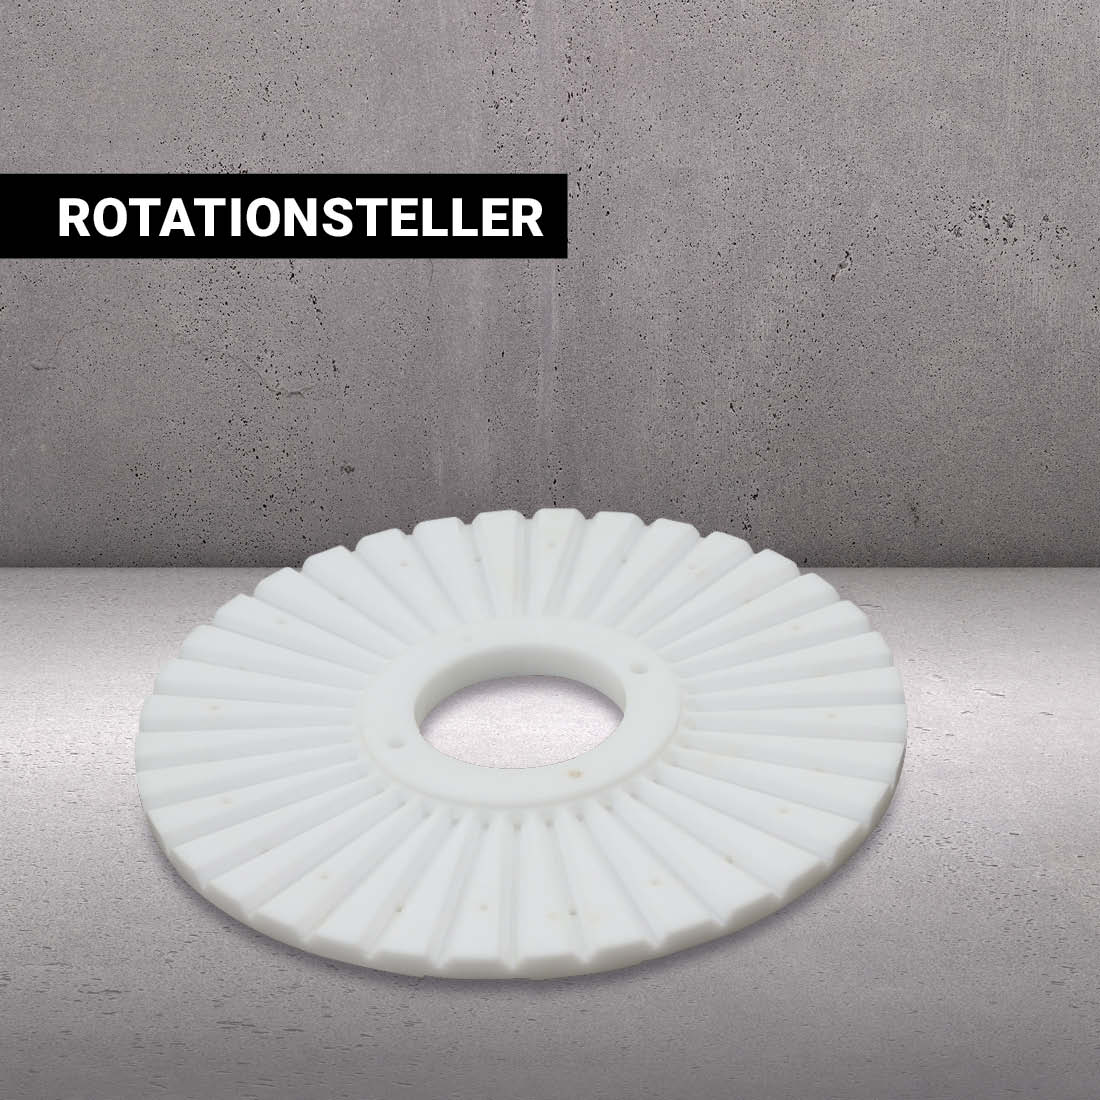 Rotationsteller